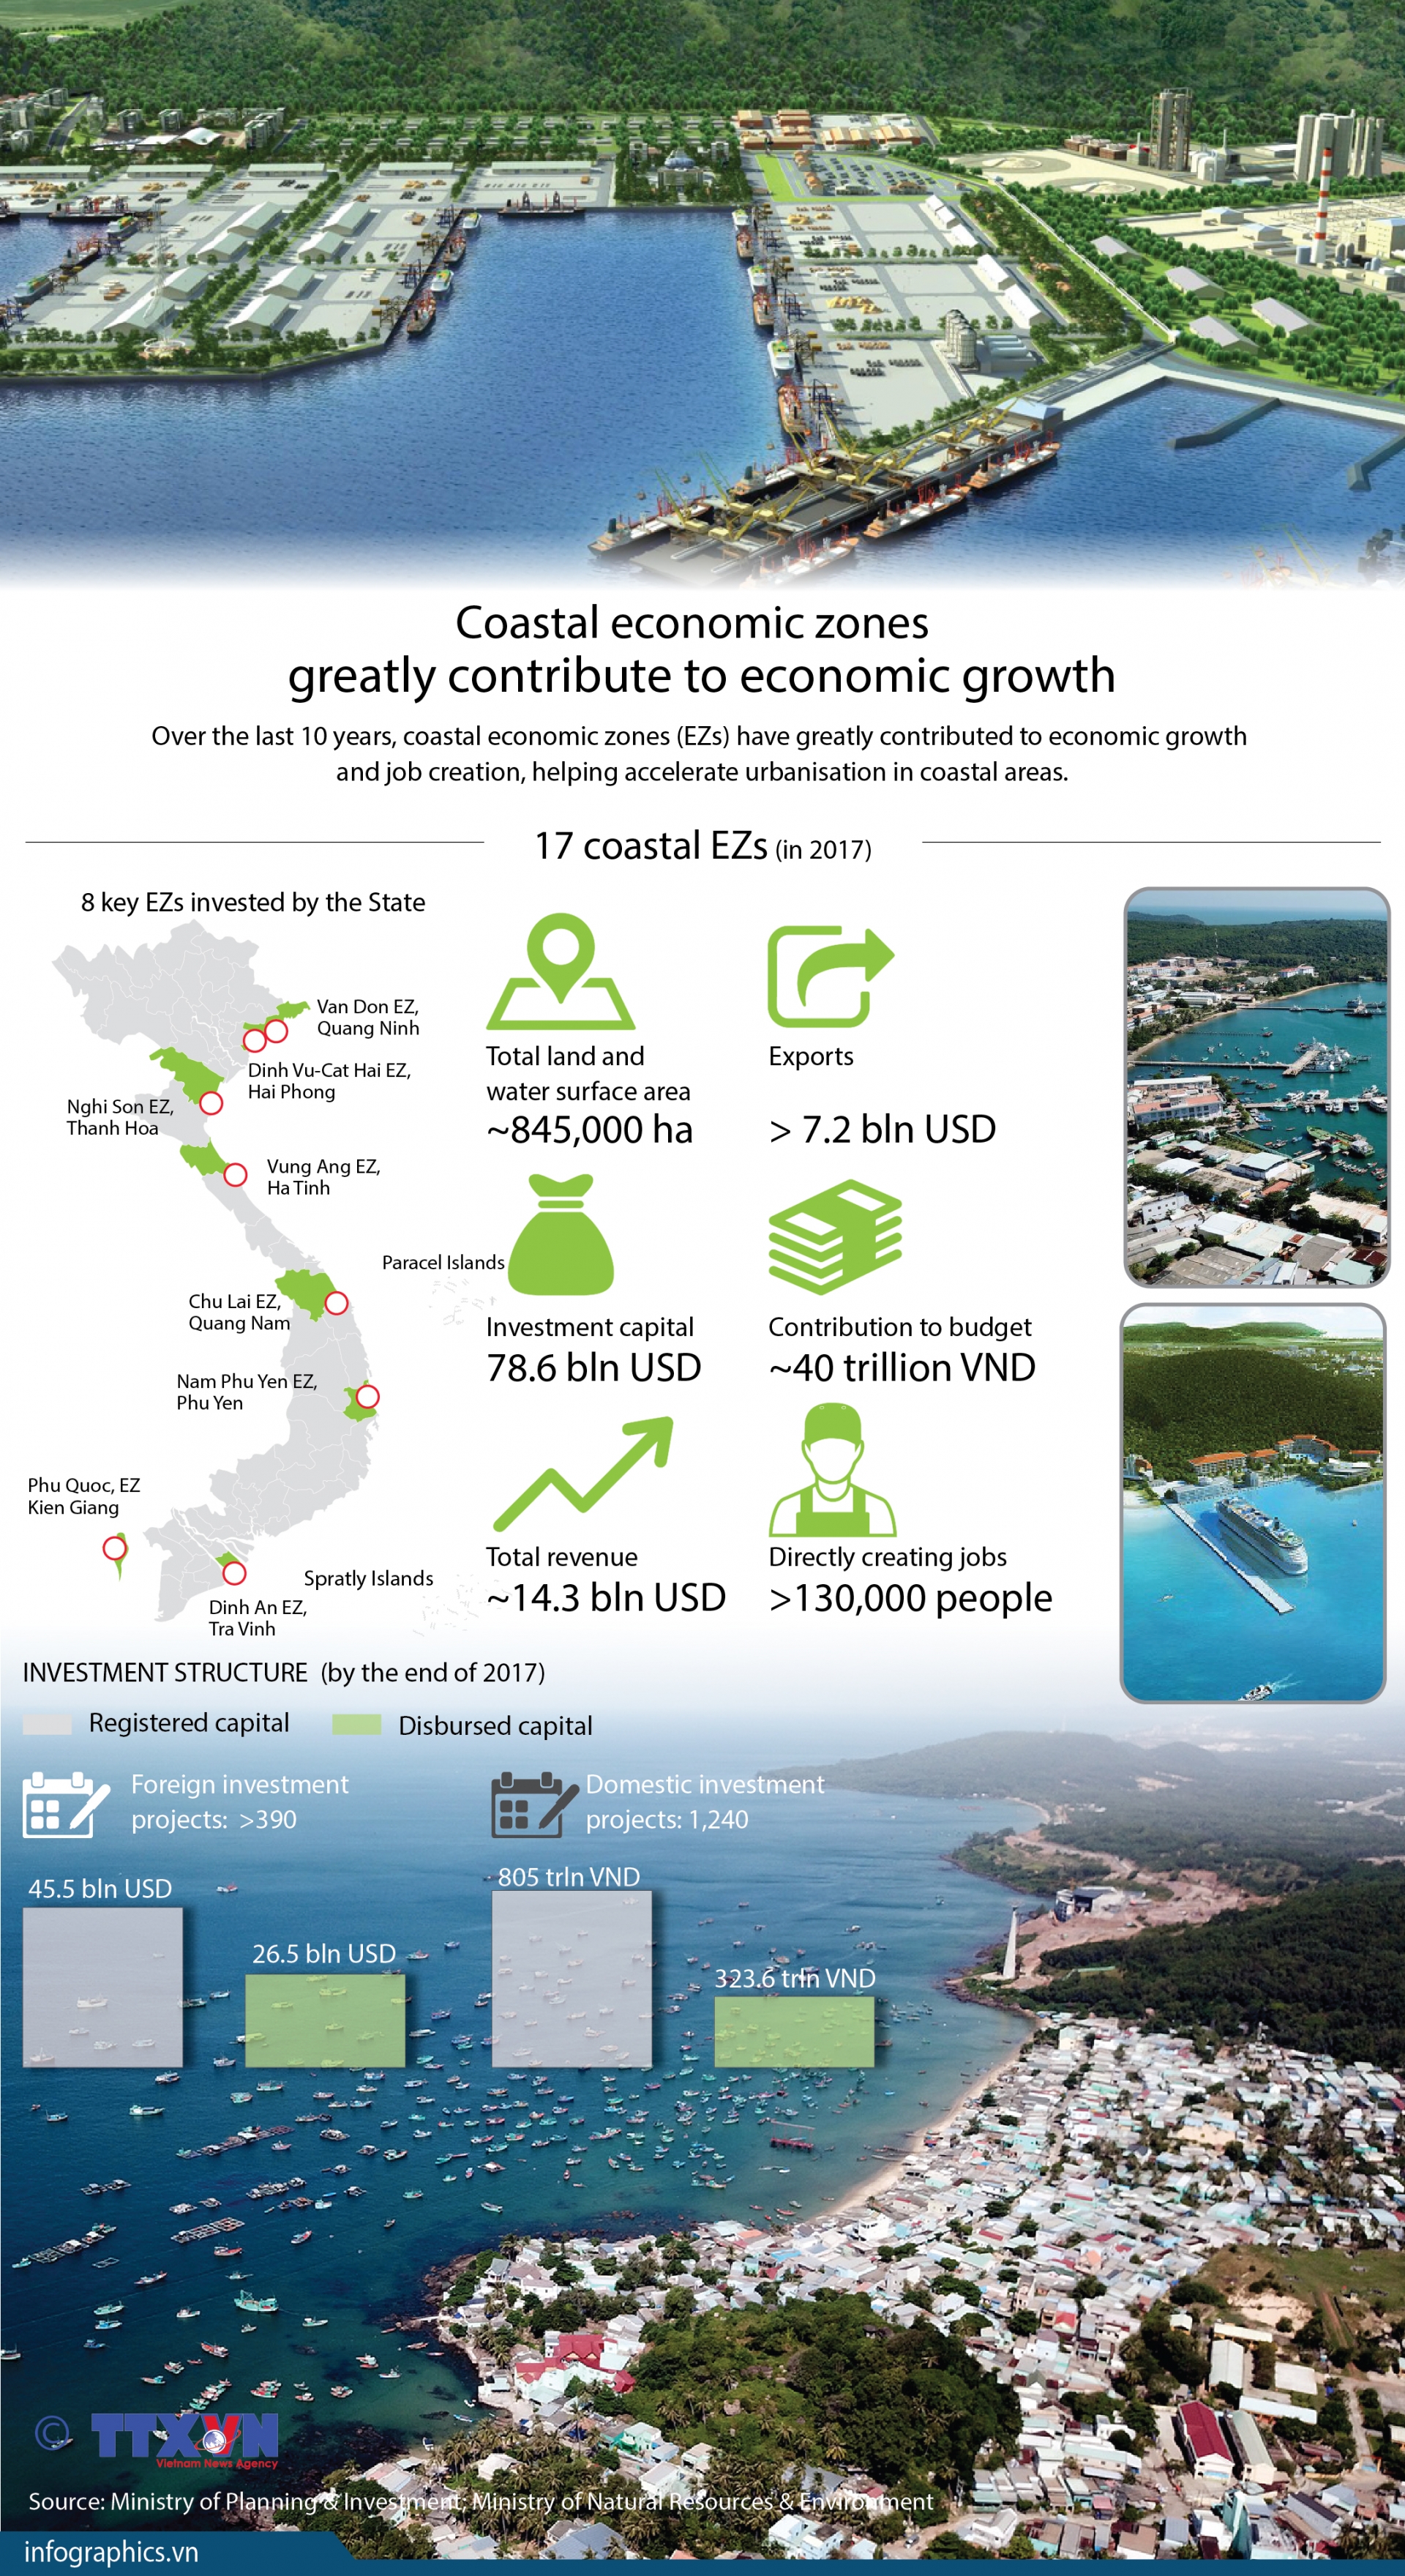 coastal economic zones greatly contribute to economic growth